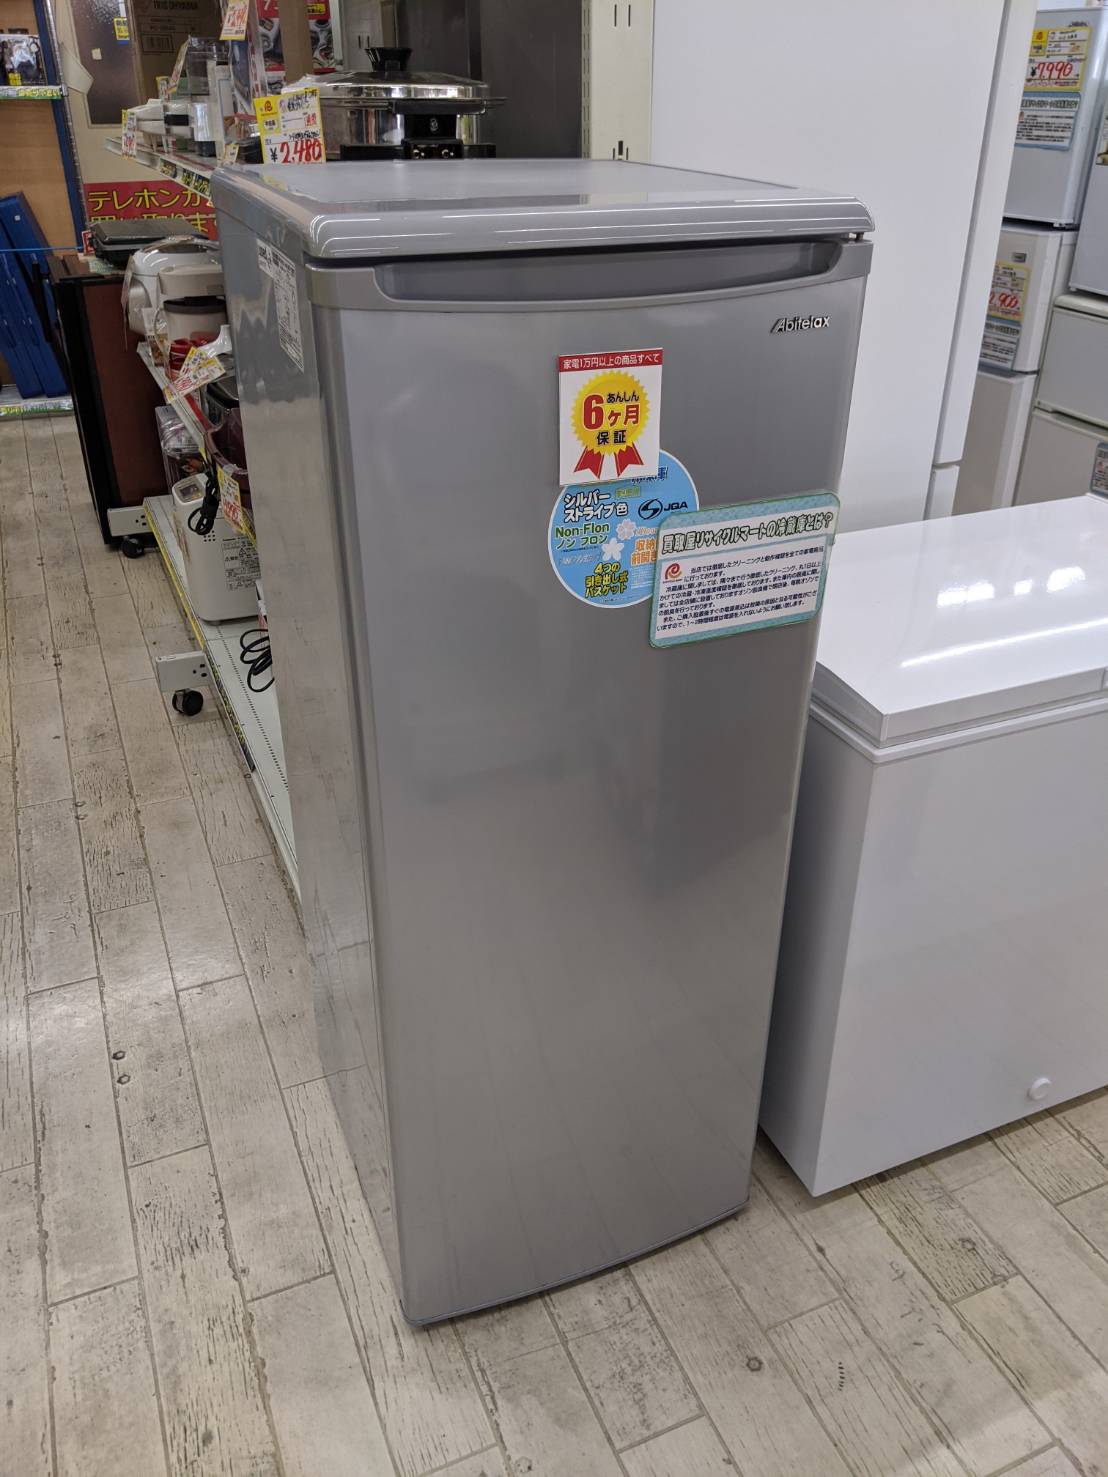 【Abitelax アビテラックス 107L 冷凍庫 2017年製 ACF-112FE 耐熱トップ】を買取させて頂きました！ - リサイクルマートは現在冷蔵庫の買取、家具の買取強化中です！お気軽にお問い合わせください。